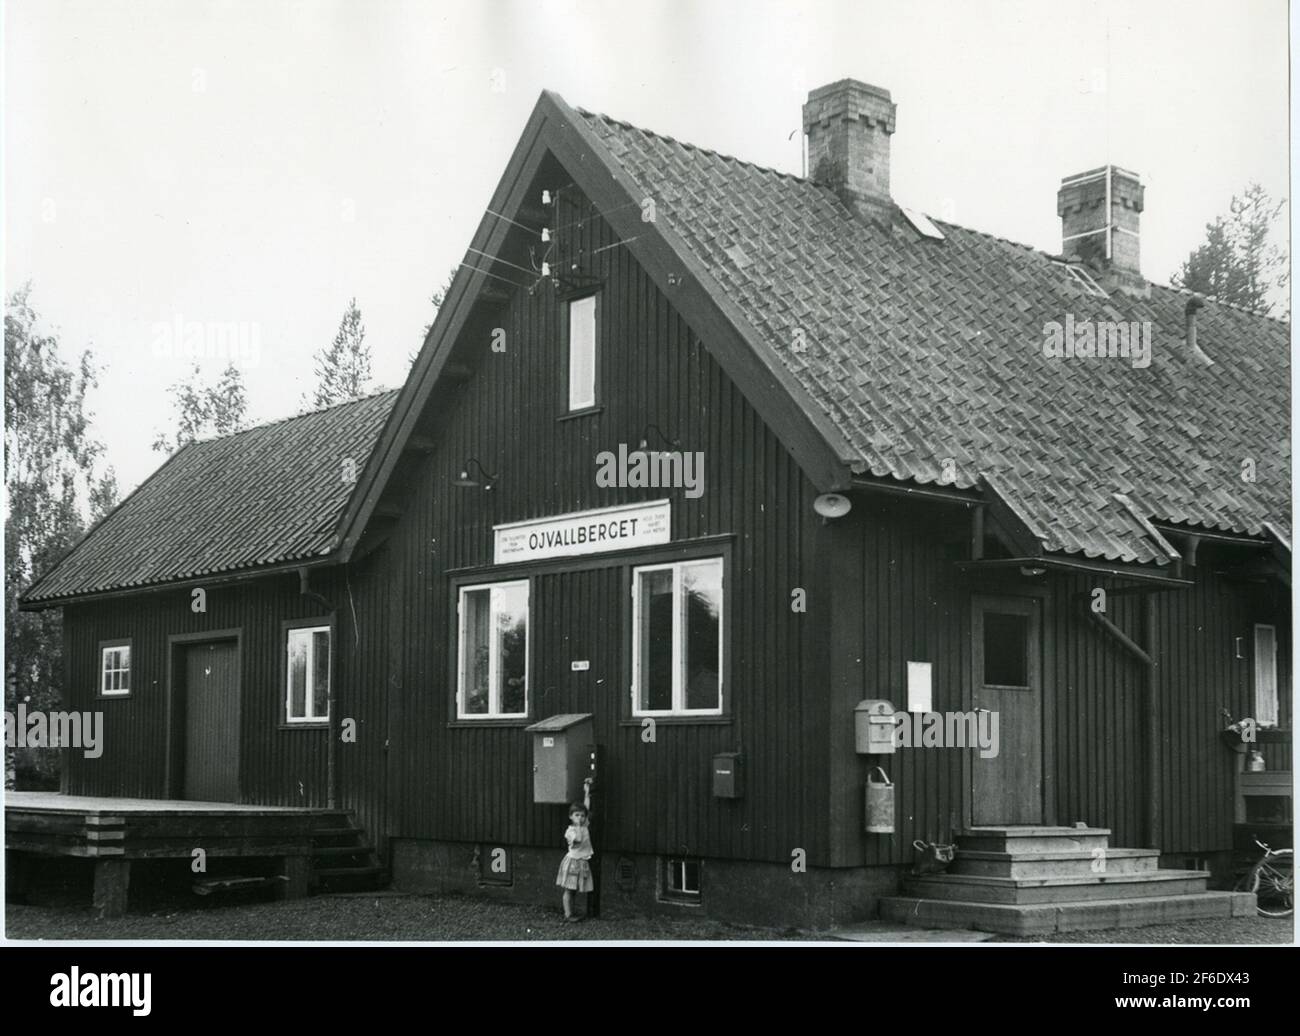 Stazione di Öjvallberget. Chiusura della Bandel Sälen - Särna il 1 settembre 1961. Foto Stock